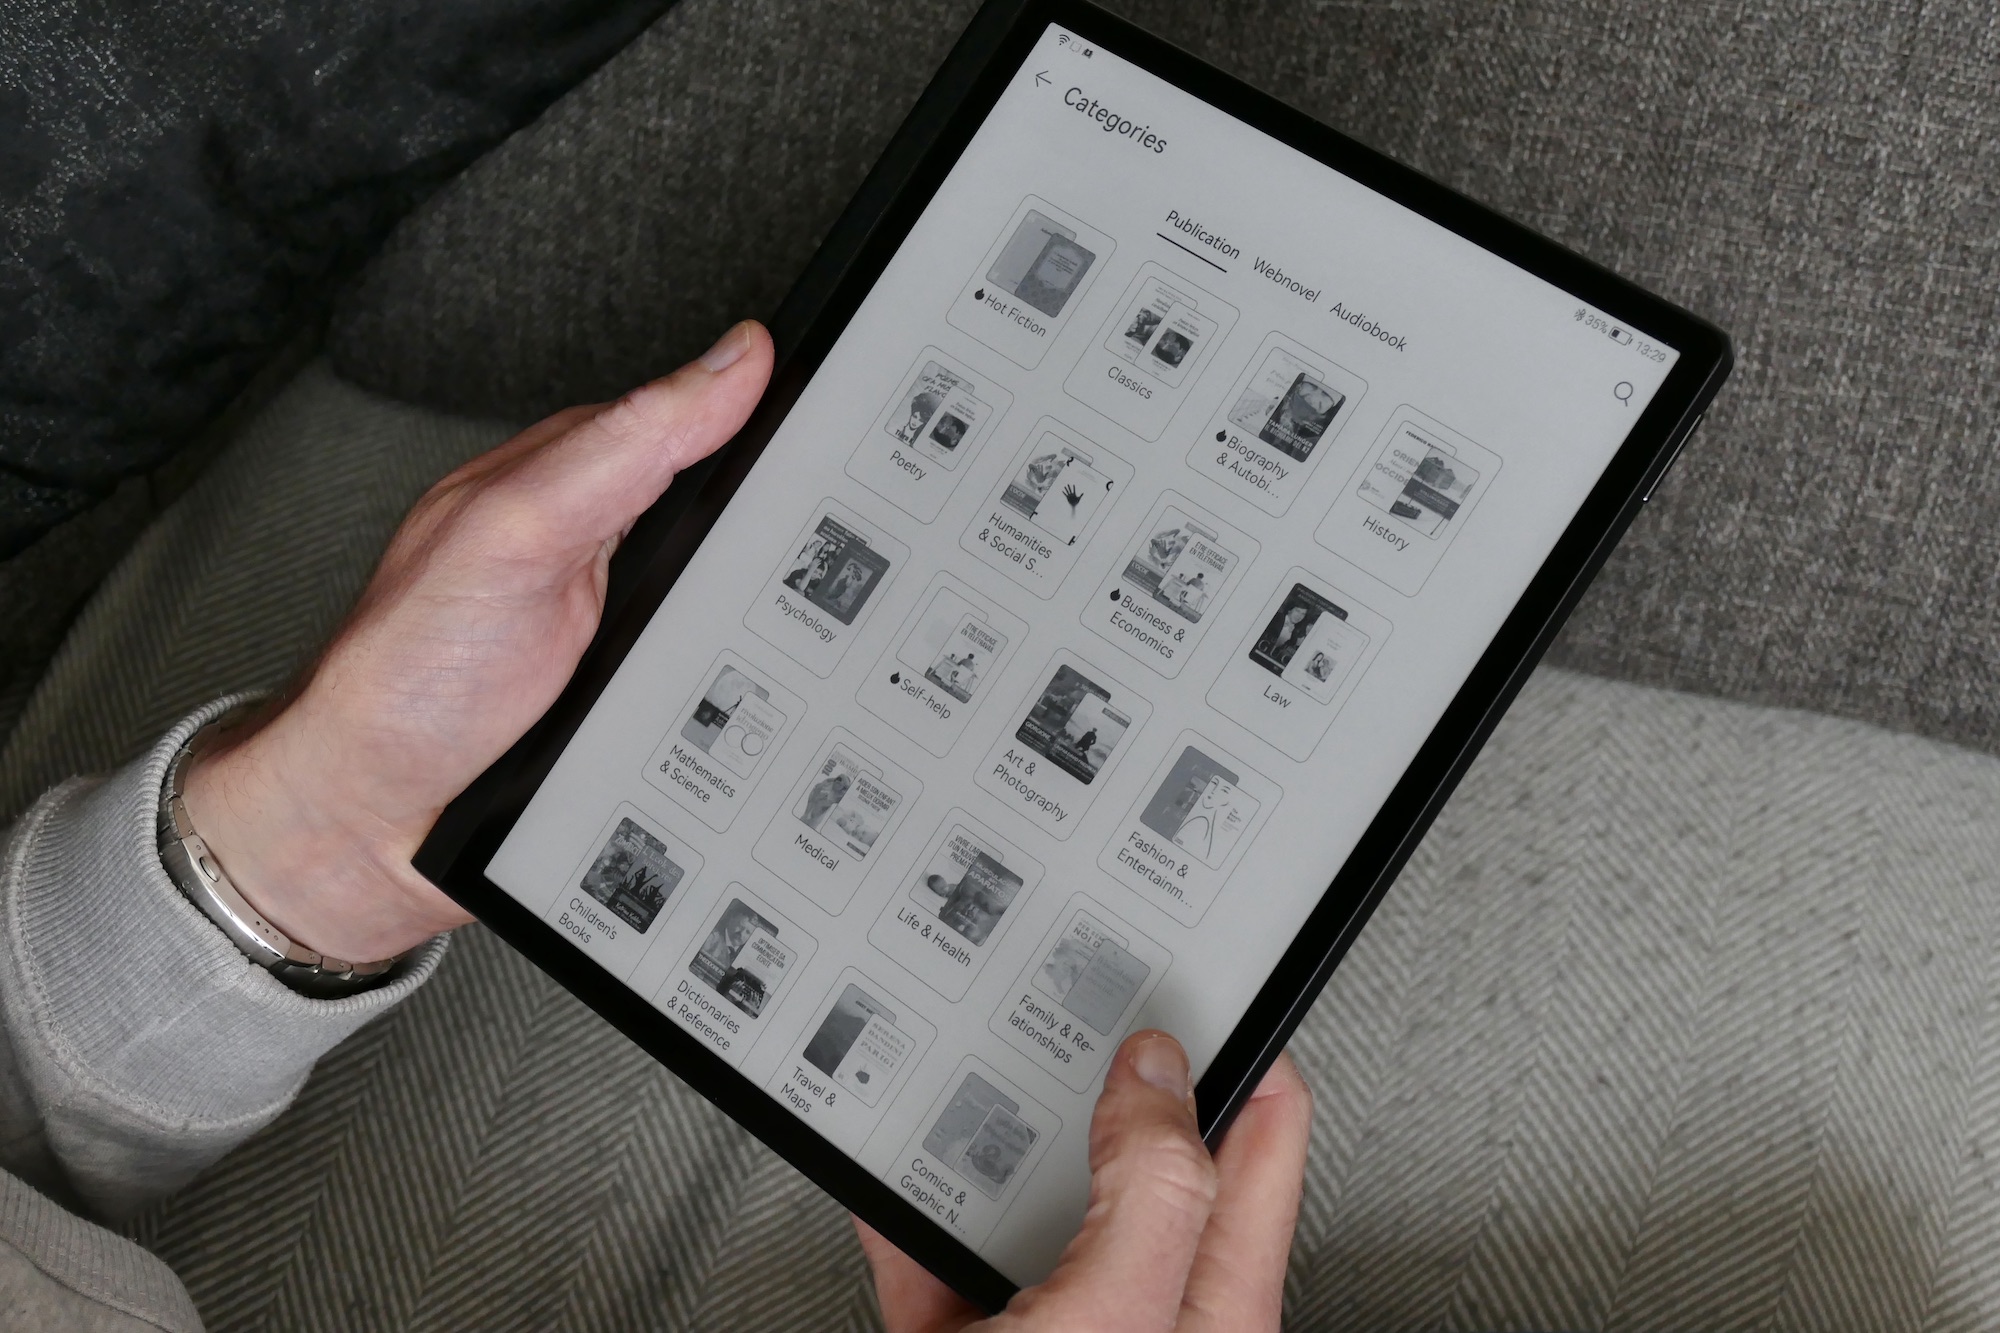 Huawei MatePad Paper and Kindle competitor: Bạn muốn một tablet để đọc sách, xem phim hoặc làm việc di động? Huawei MatePad Paper được đánh giá là một trong những đối thủ của Kindle với màn hình lớn và sắc nét, pin xài lâu và nhiều tính năng hữu ích. Hãy khám phá những điều tuyệt vời mà sản phẩm này có thể mang đến cho bạn.